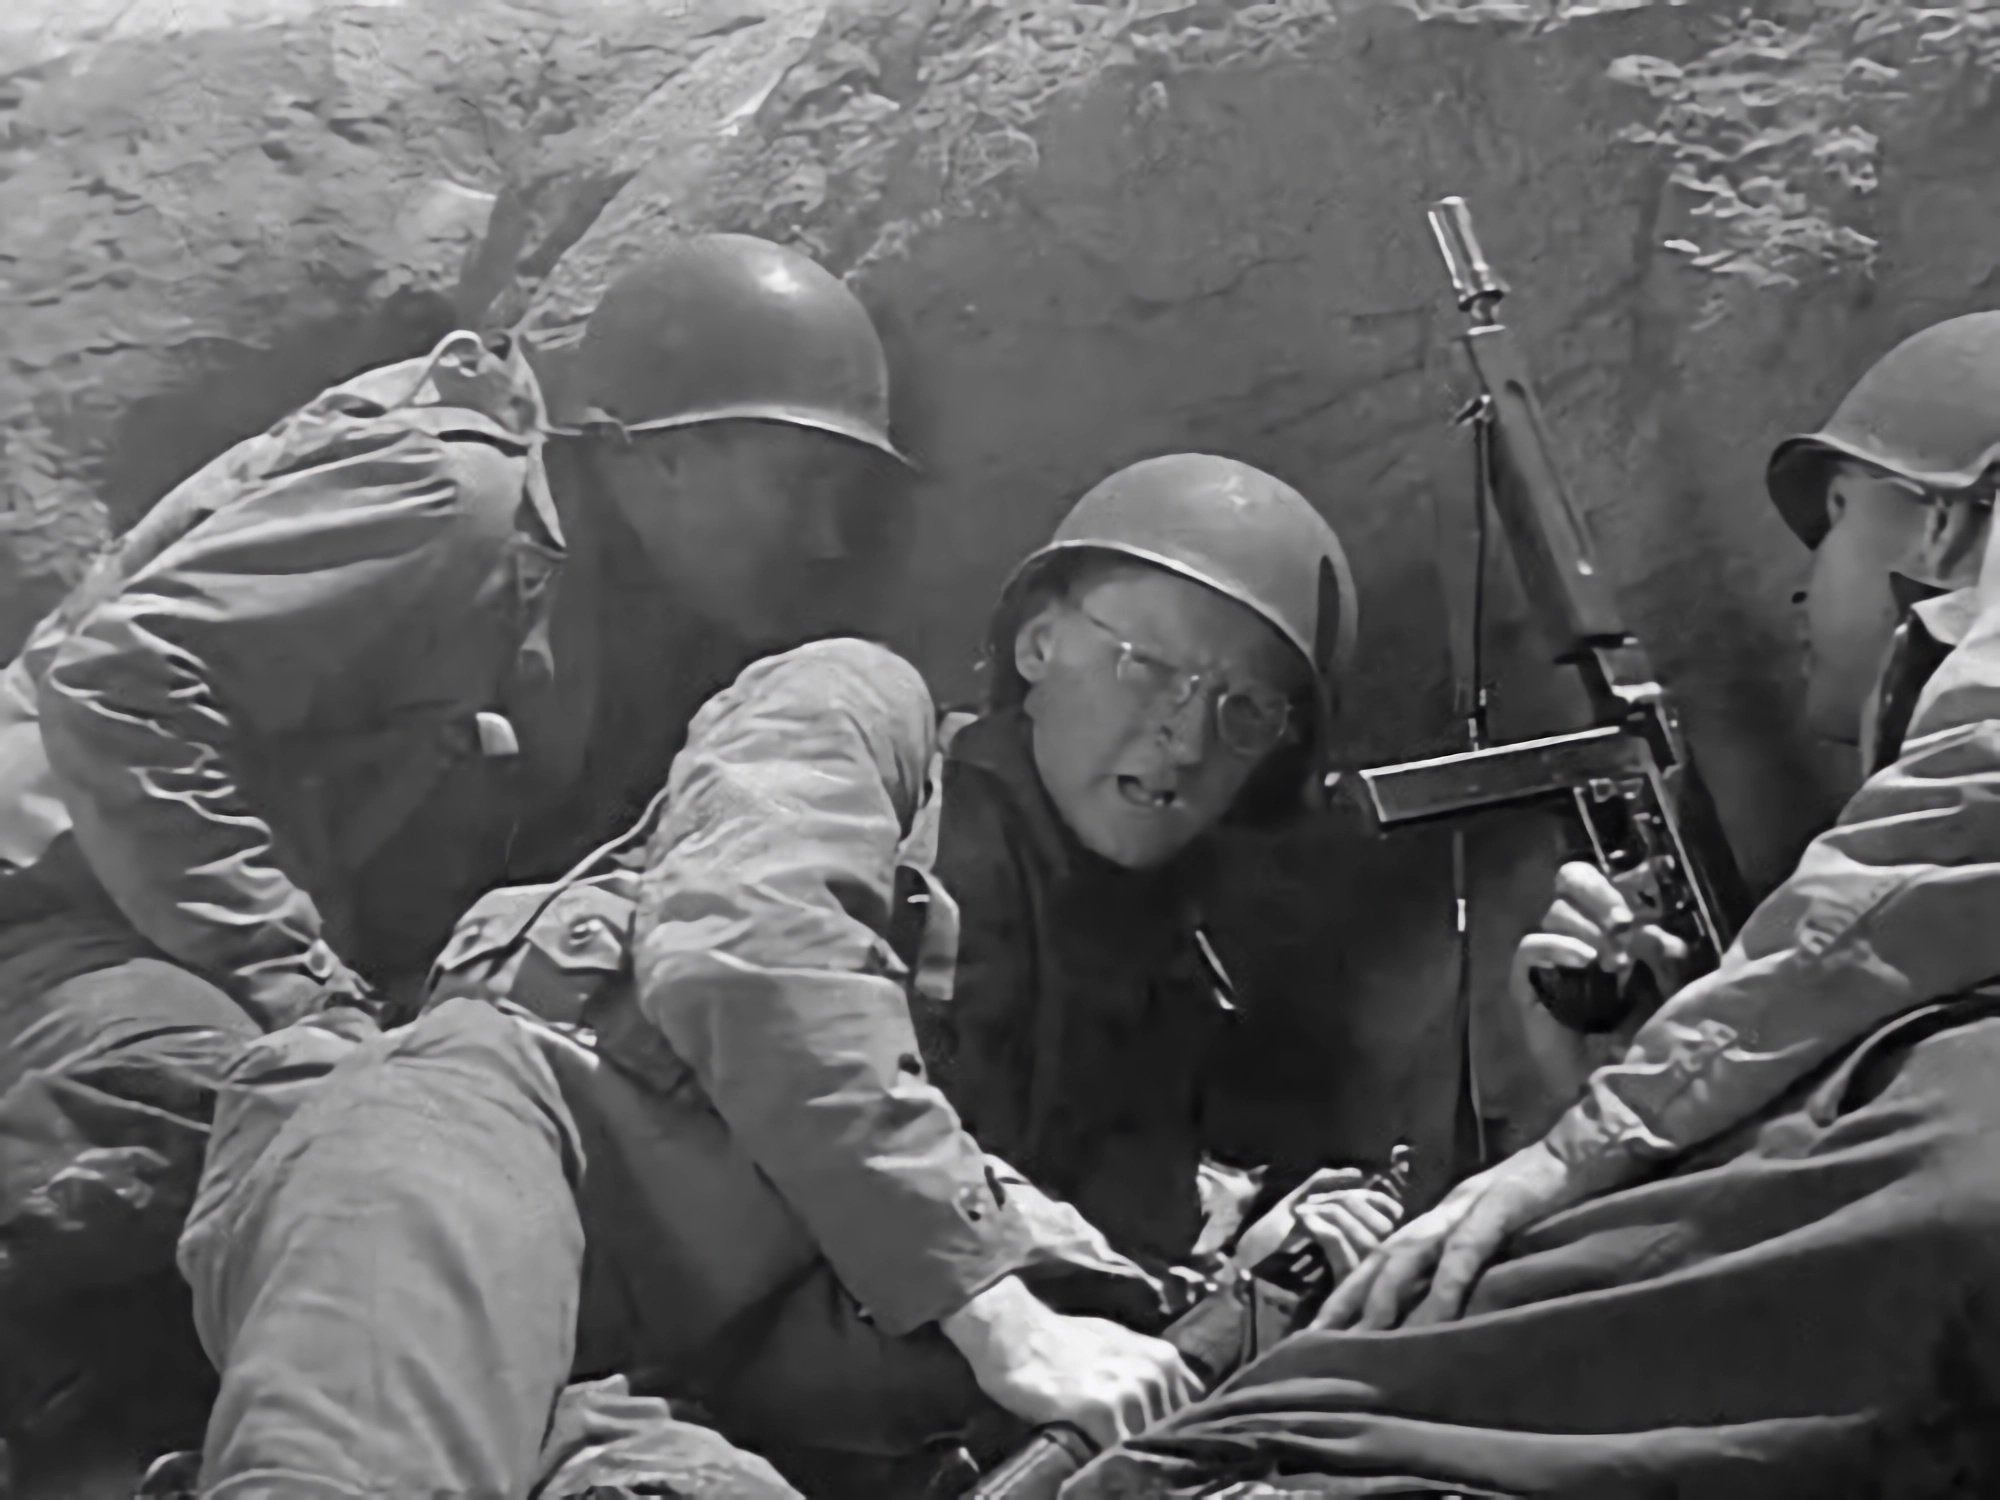 nyt prime videossa: noustaanpas maihin normandiassa – 2. maailmansodan leffaan saatiin kuvamateriaalia armeijoilta